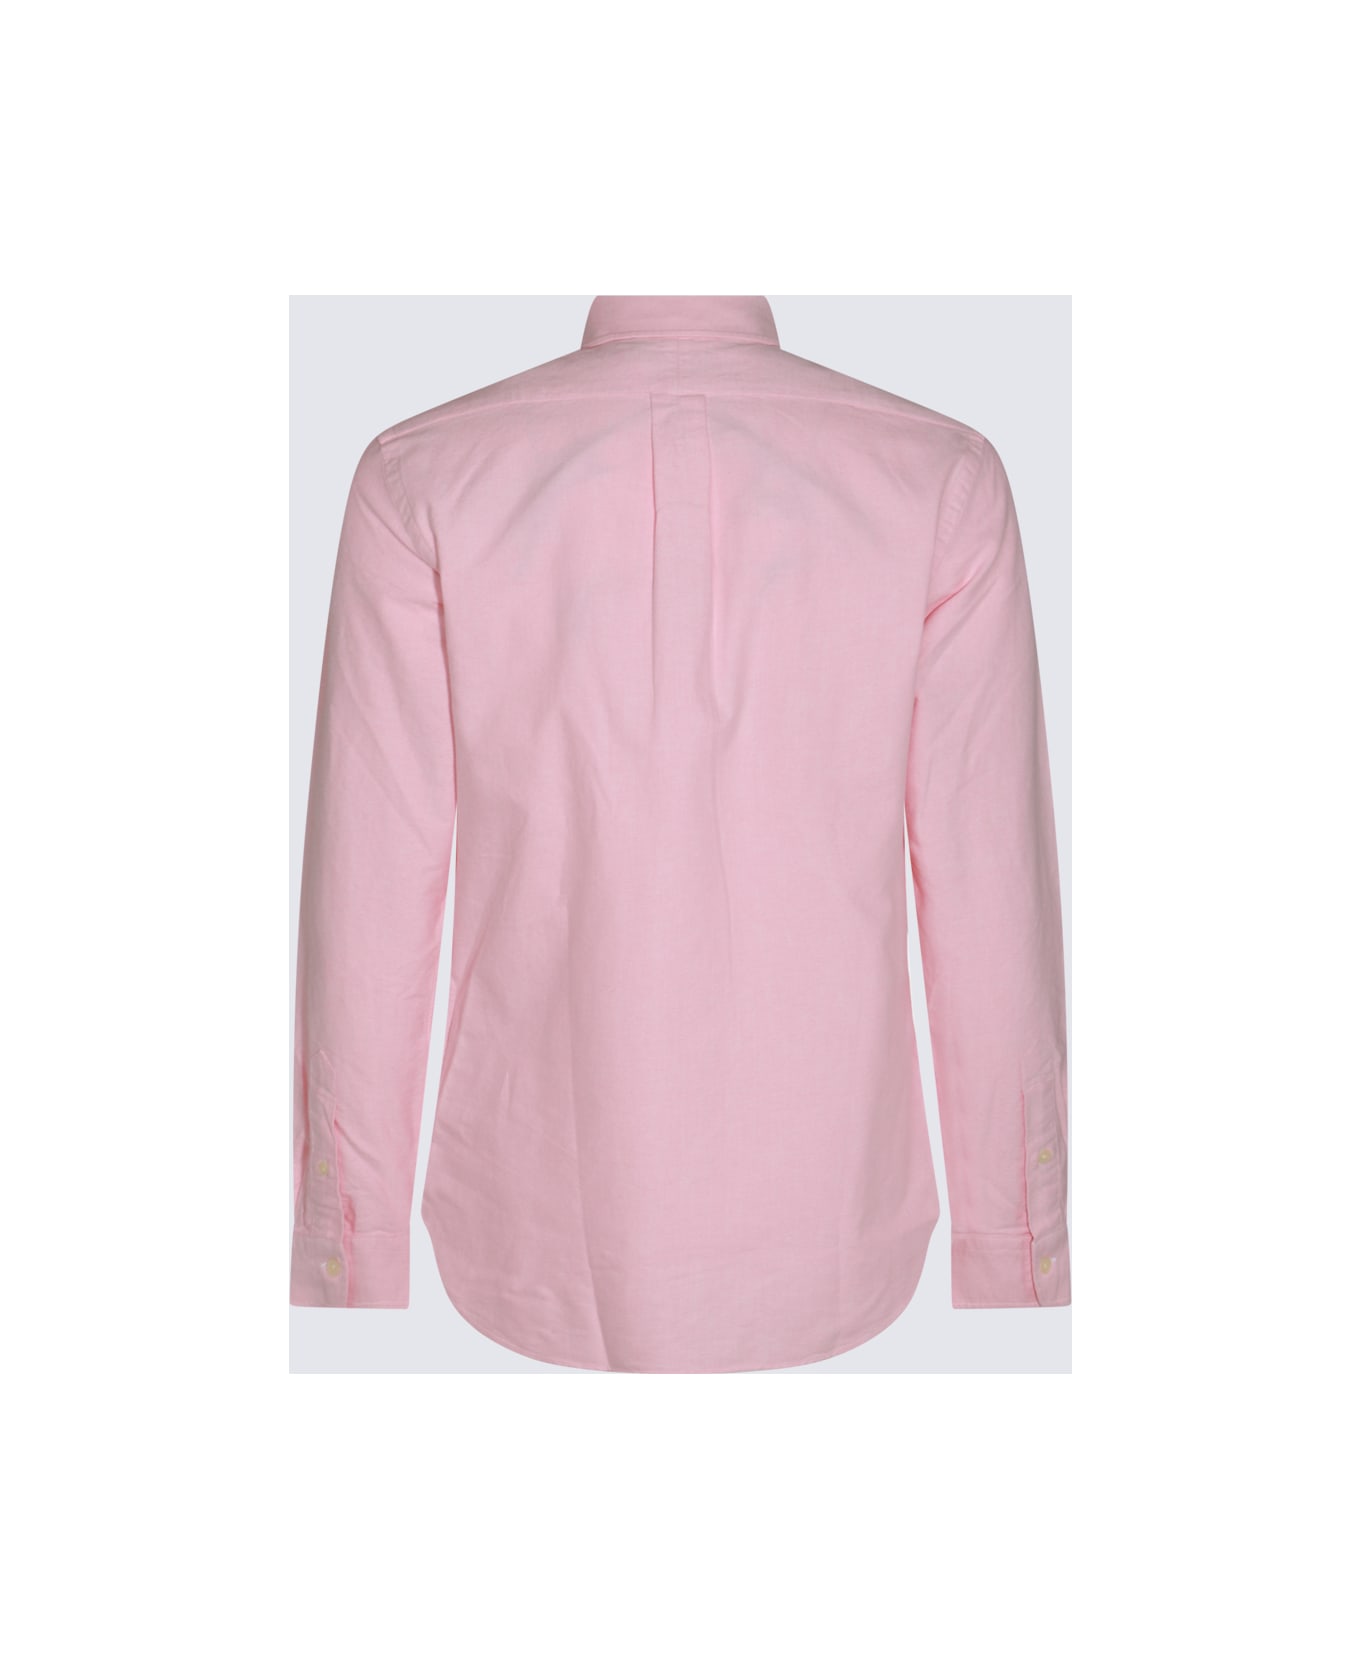 Polo Ralph Lauren Pink Cotton Shirt - BSR PINK